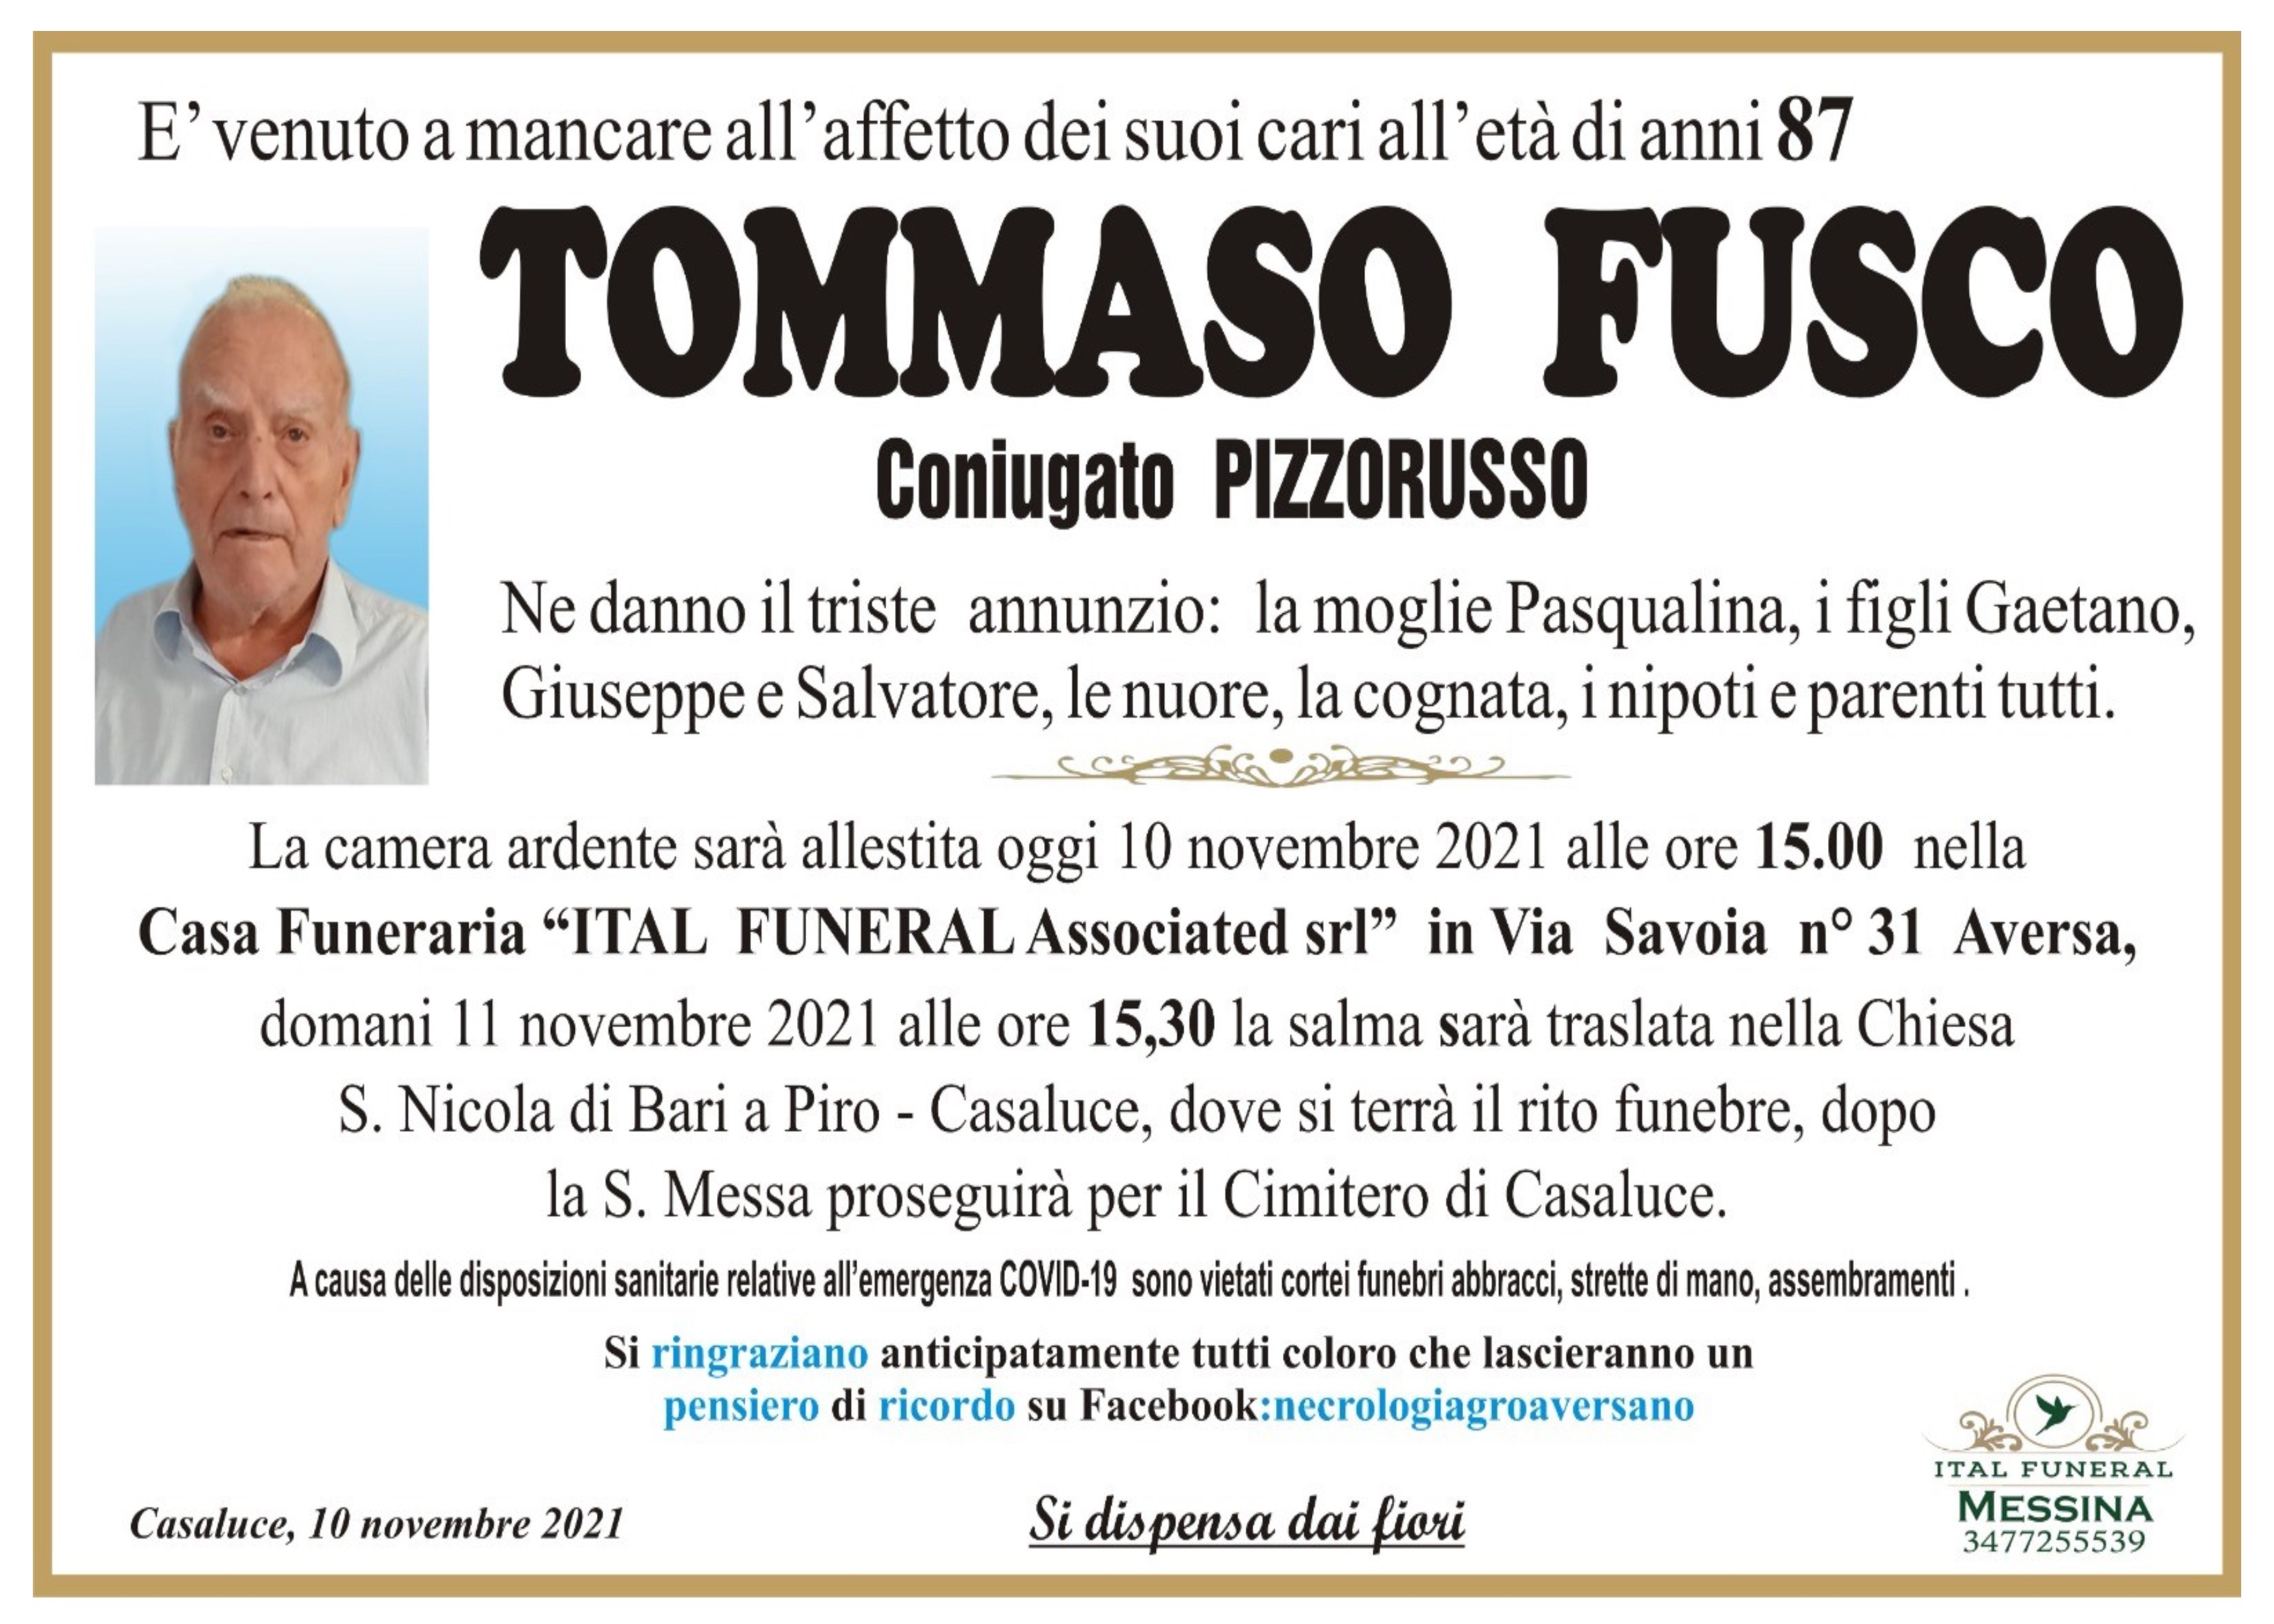 Tommaso Fusco